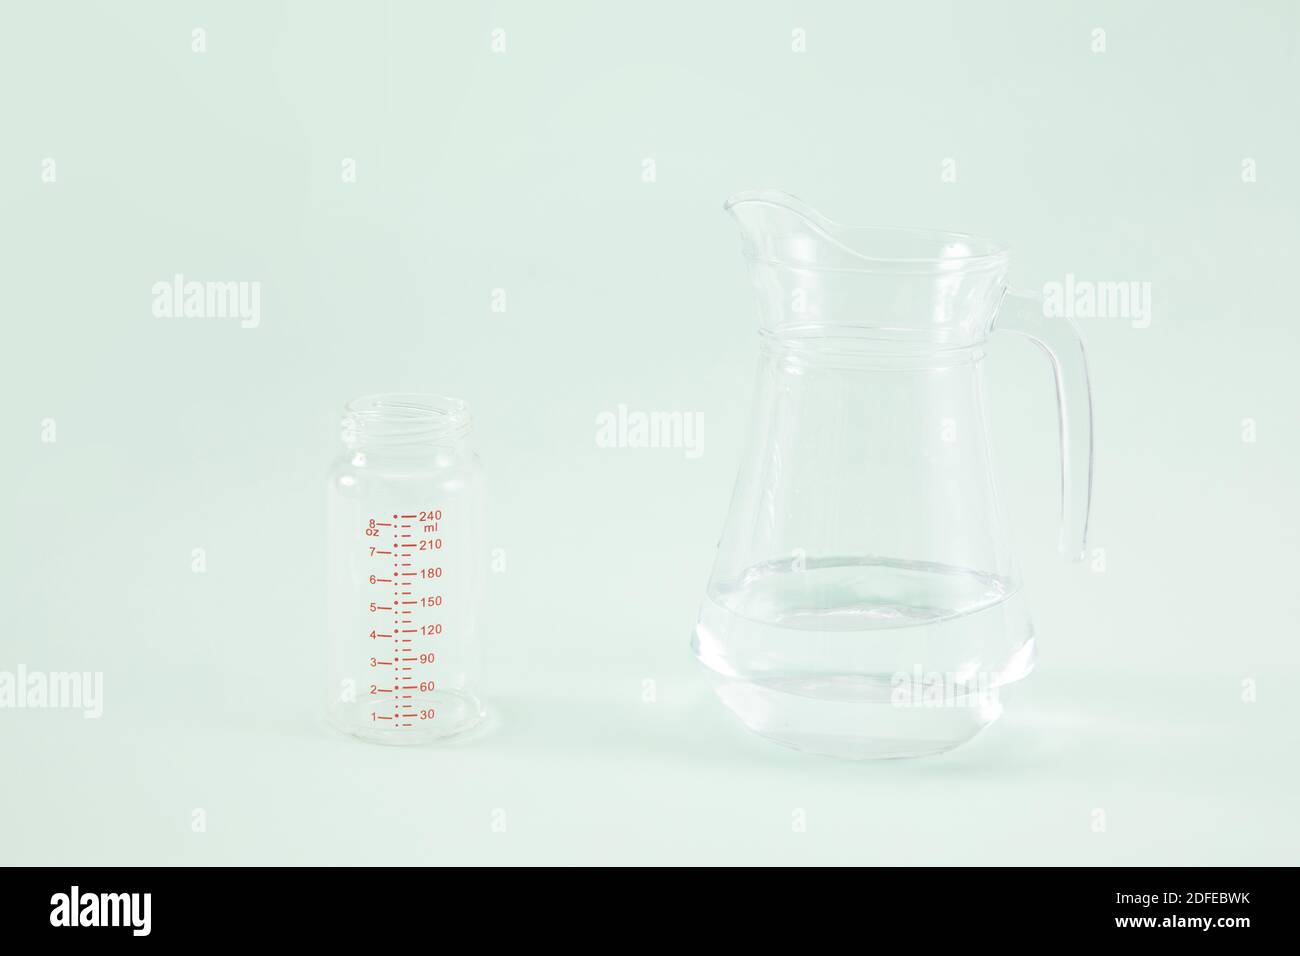 https://c8.alamy.com/compes/2dfebwk/una-botella-de-formula-vacia-y-una-jarra-de-agua-una-superficie-verde-2dfebwk.jpg